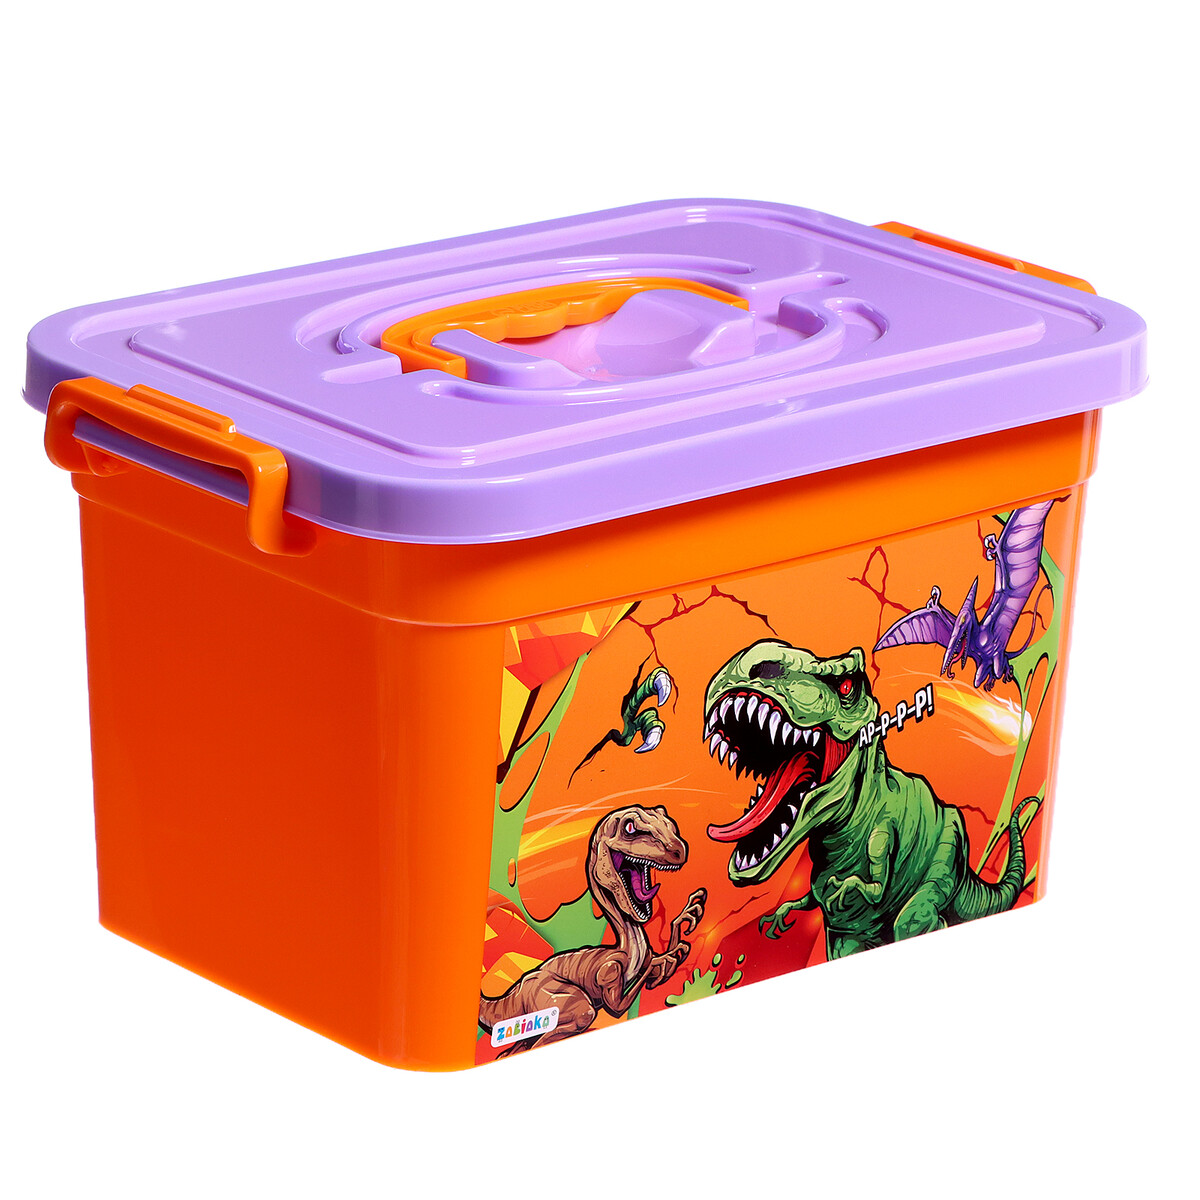 Ящик для хранения игрушек ящик контейнер для игрушек эльфпласт на колесах динозаврики нежно голубой коралловый